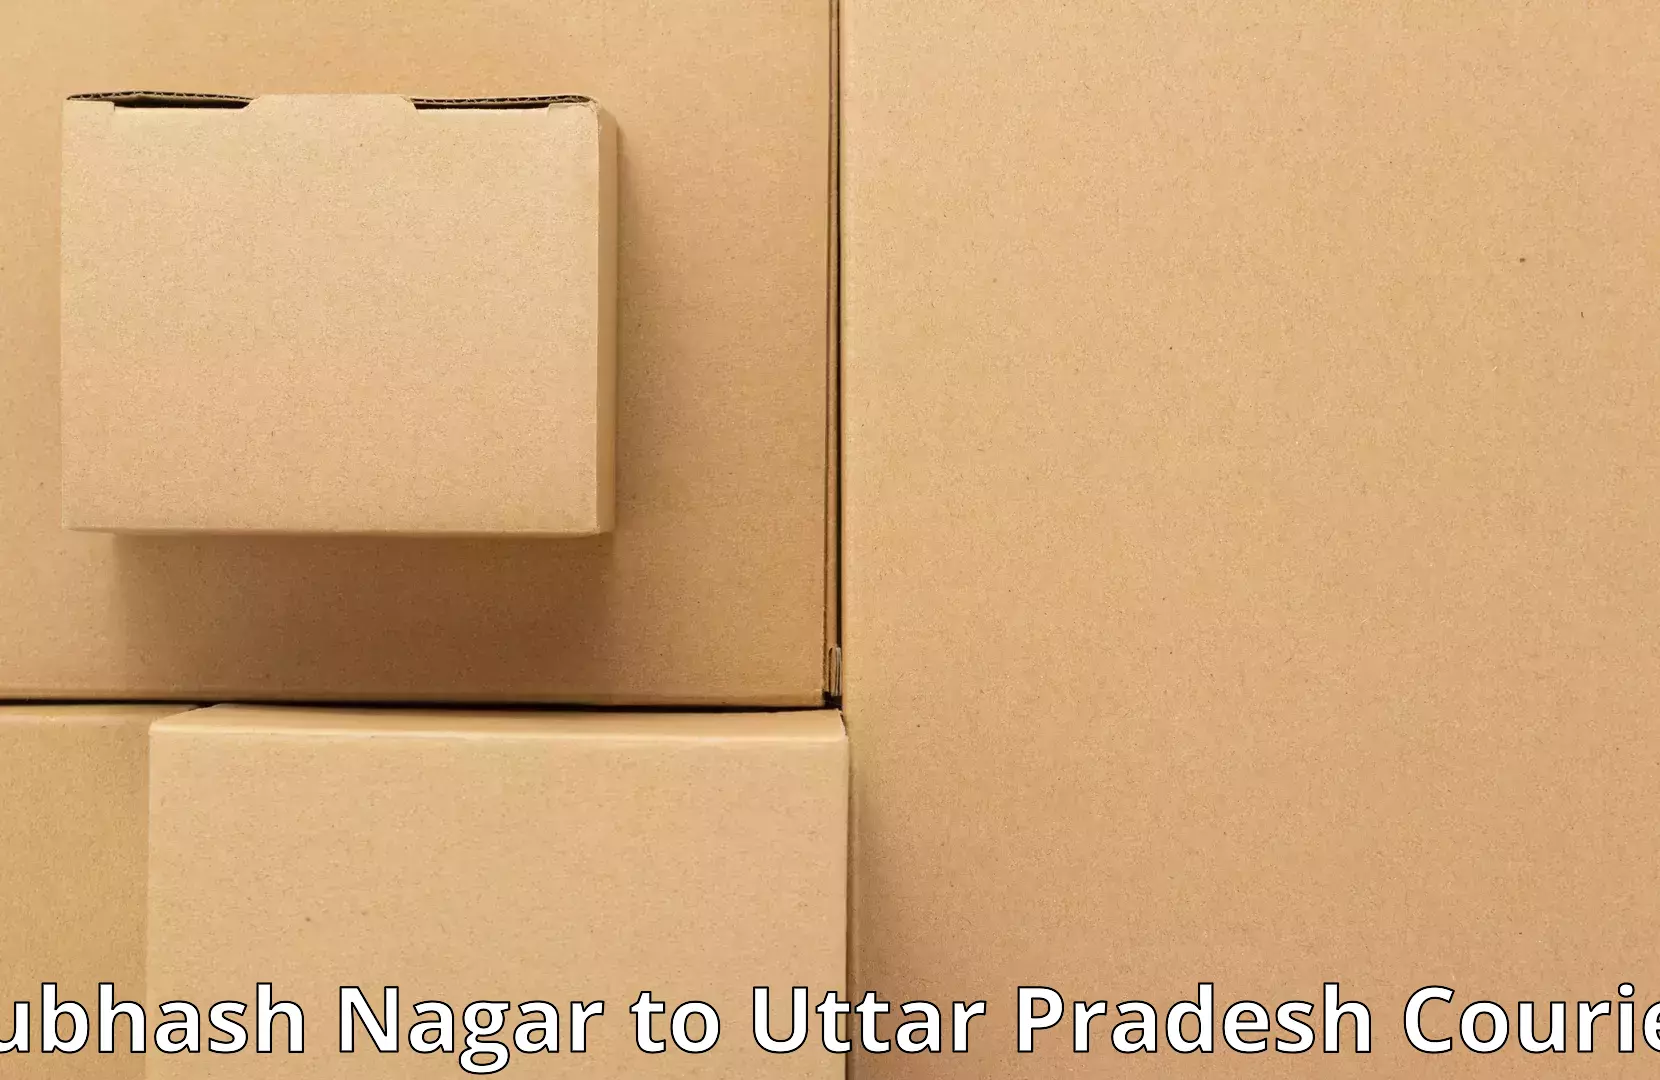 Furniture moving experts in Subhash Nagar to Ganj Dundwara